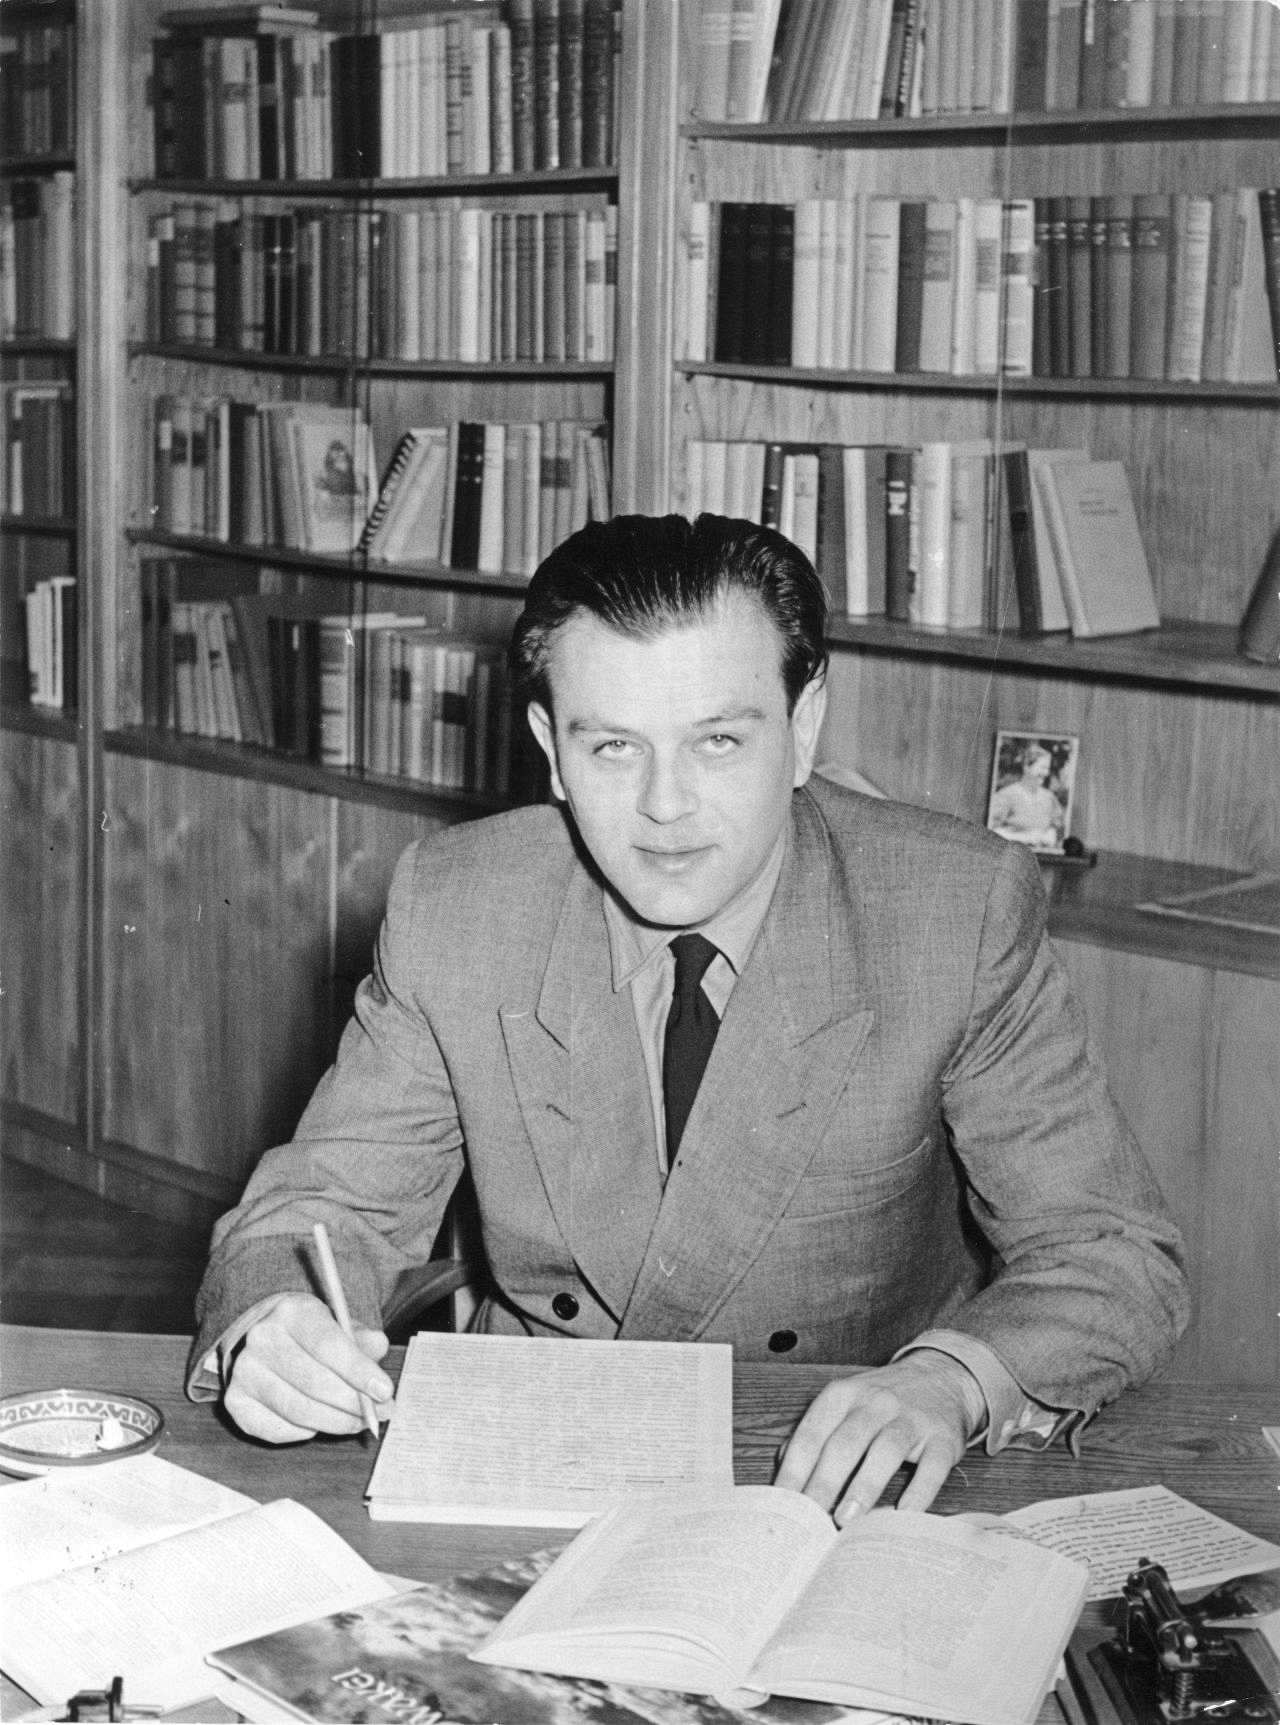 Der DDR-Schriftsteller Erich Loest am Schreibstisch, 1955.